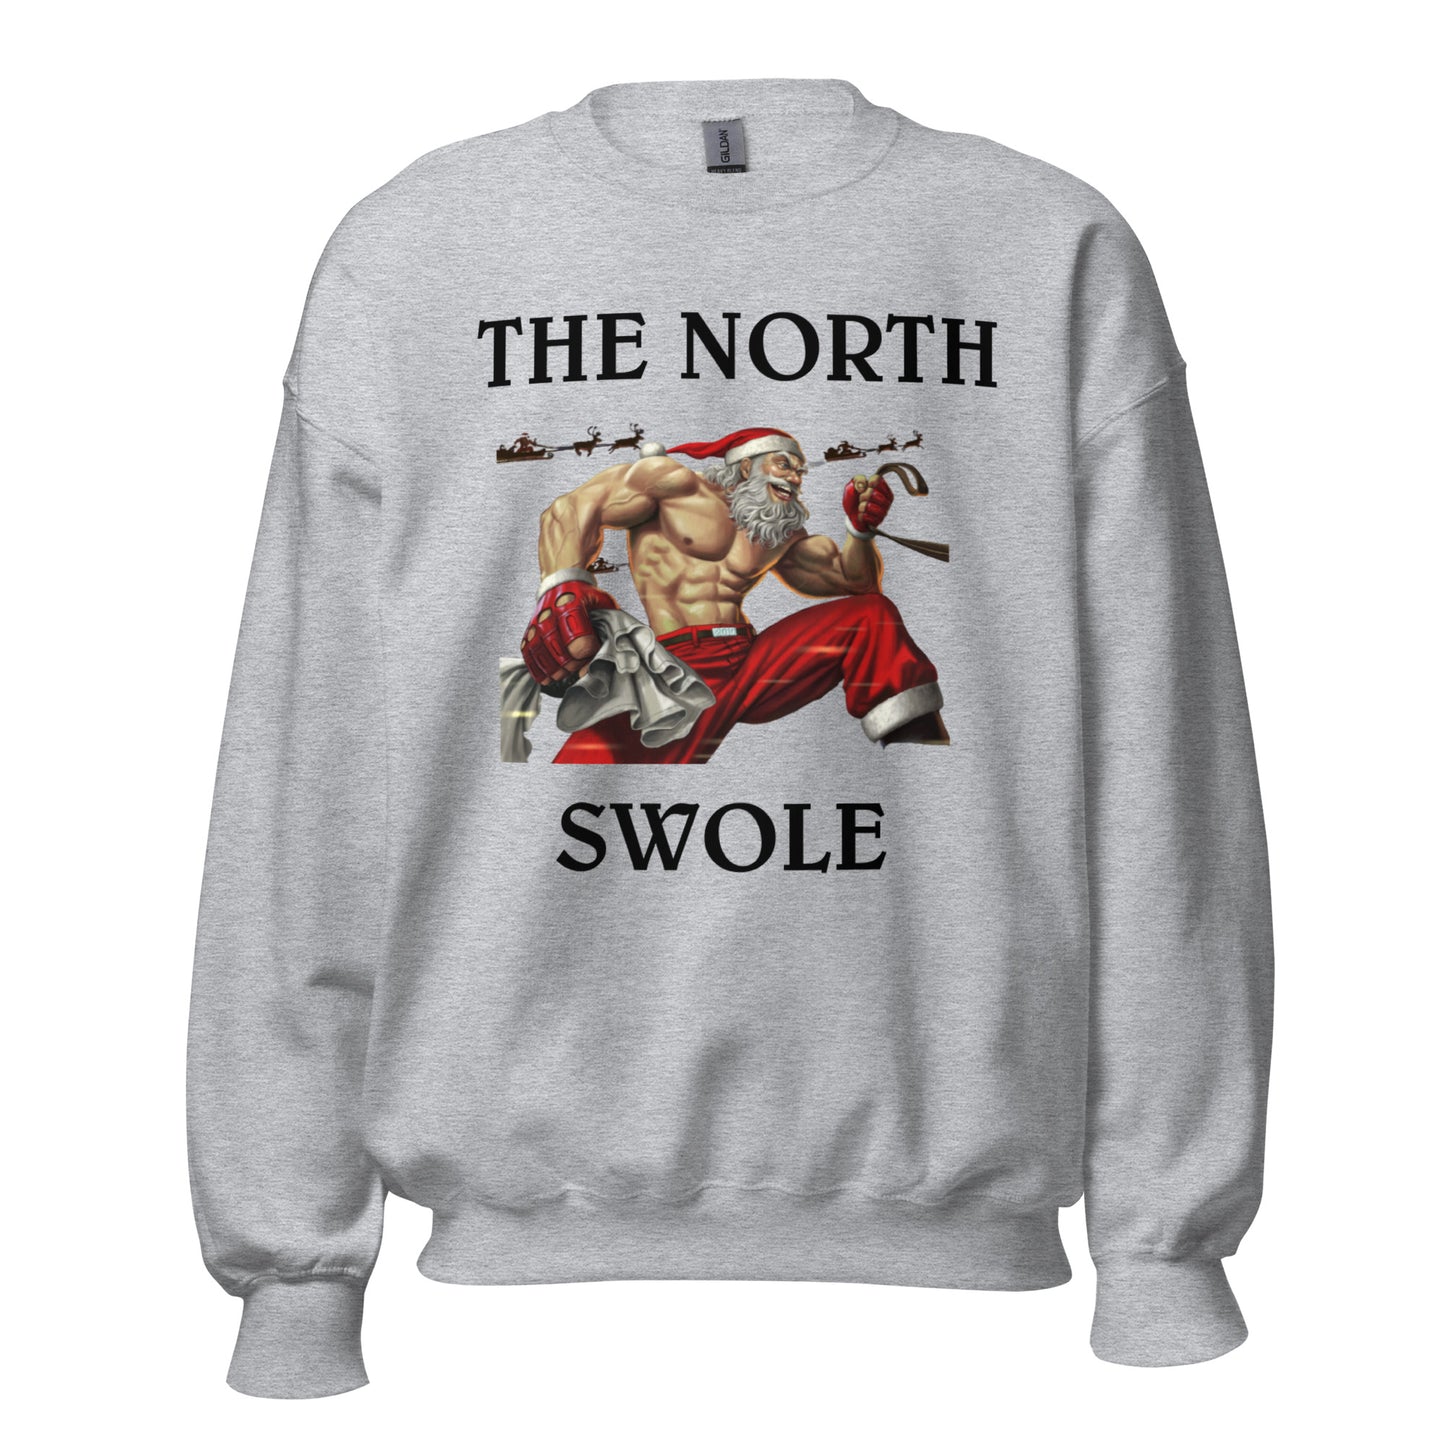 THE NORTH SWOLE